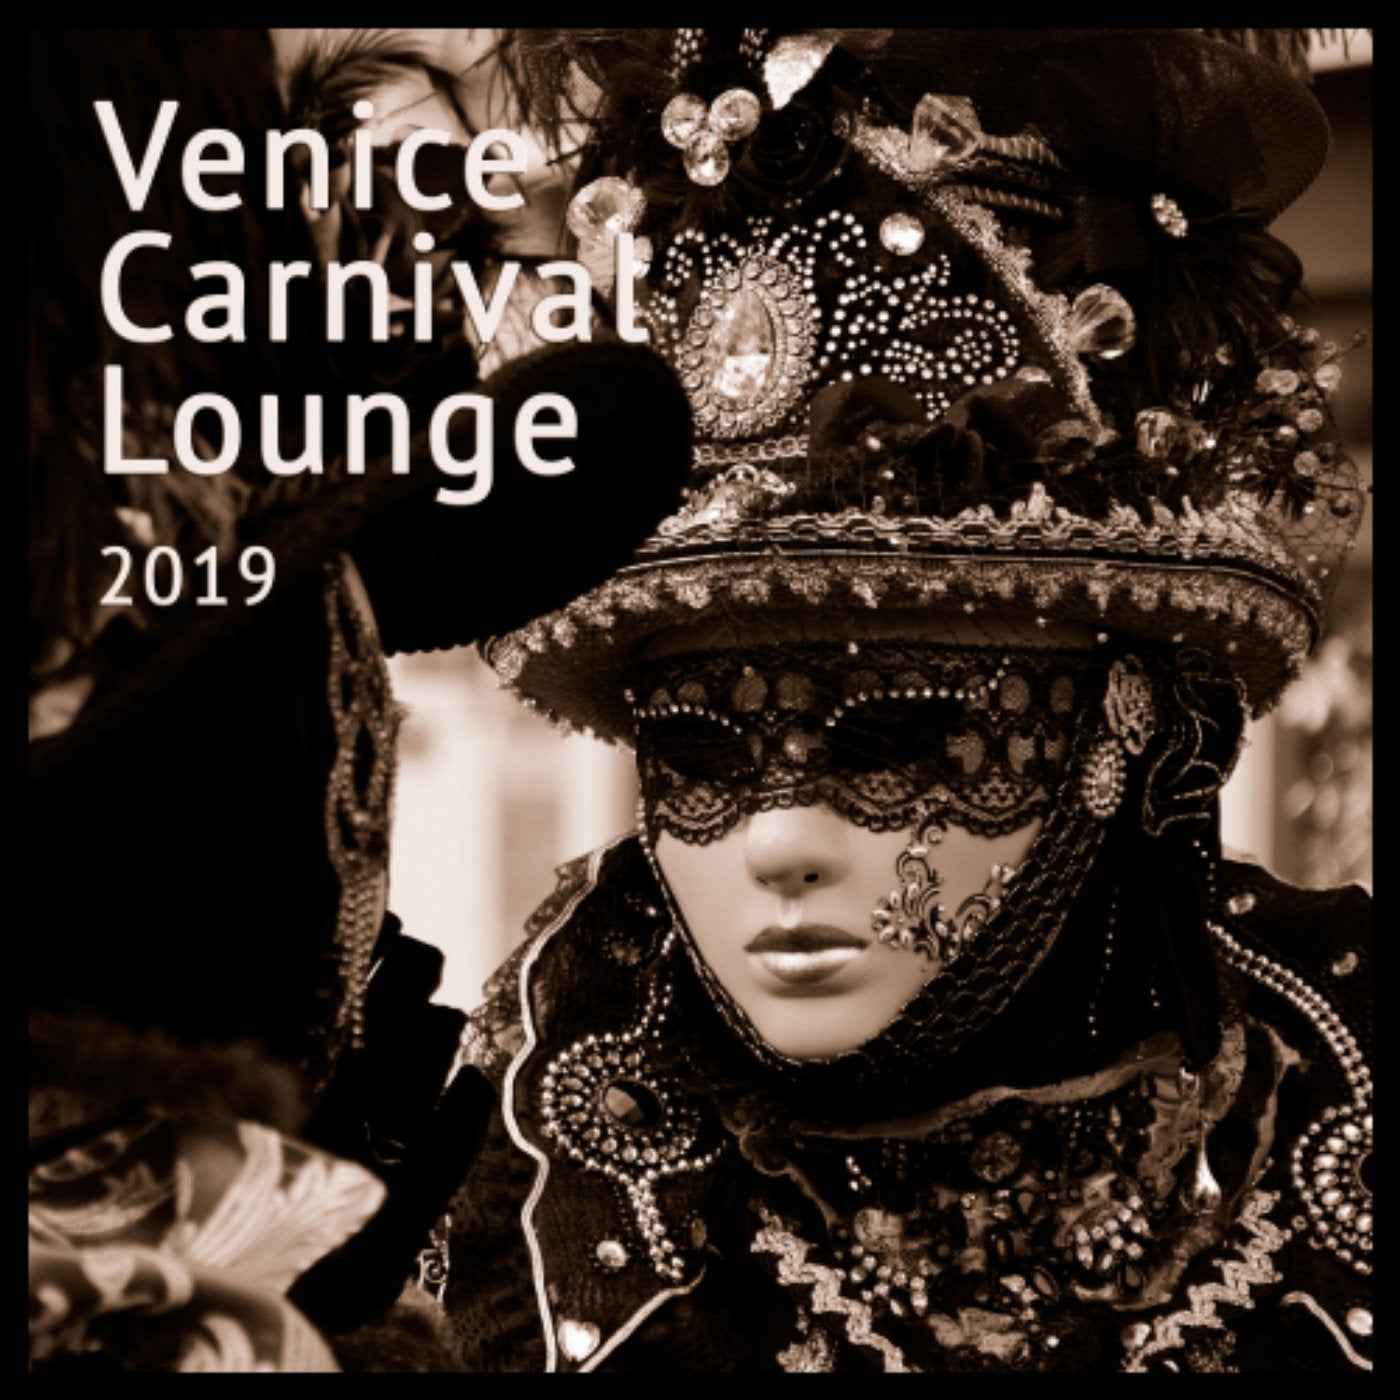 Venice Carnival Lounge 2019